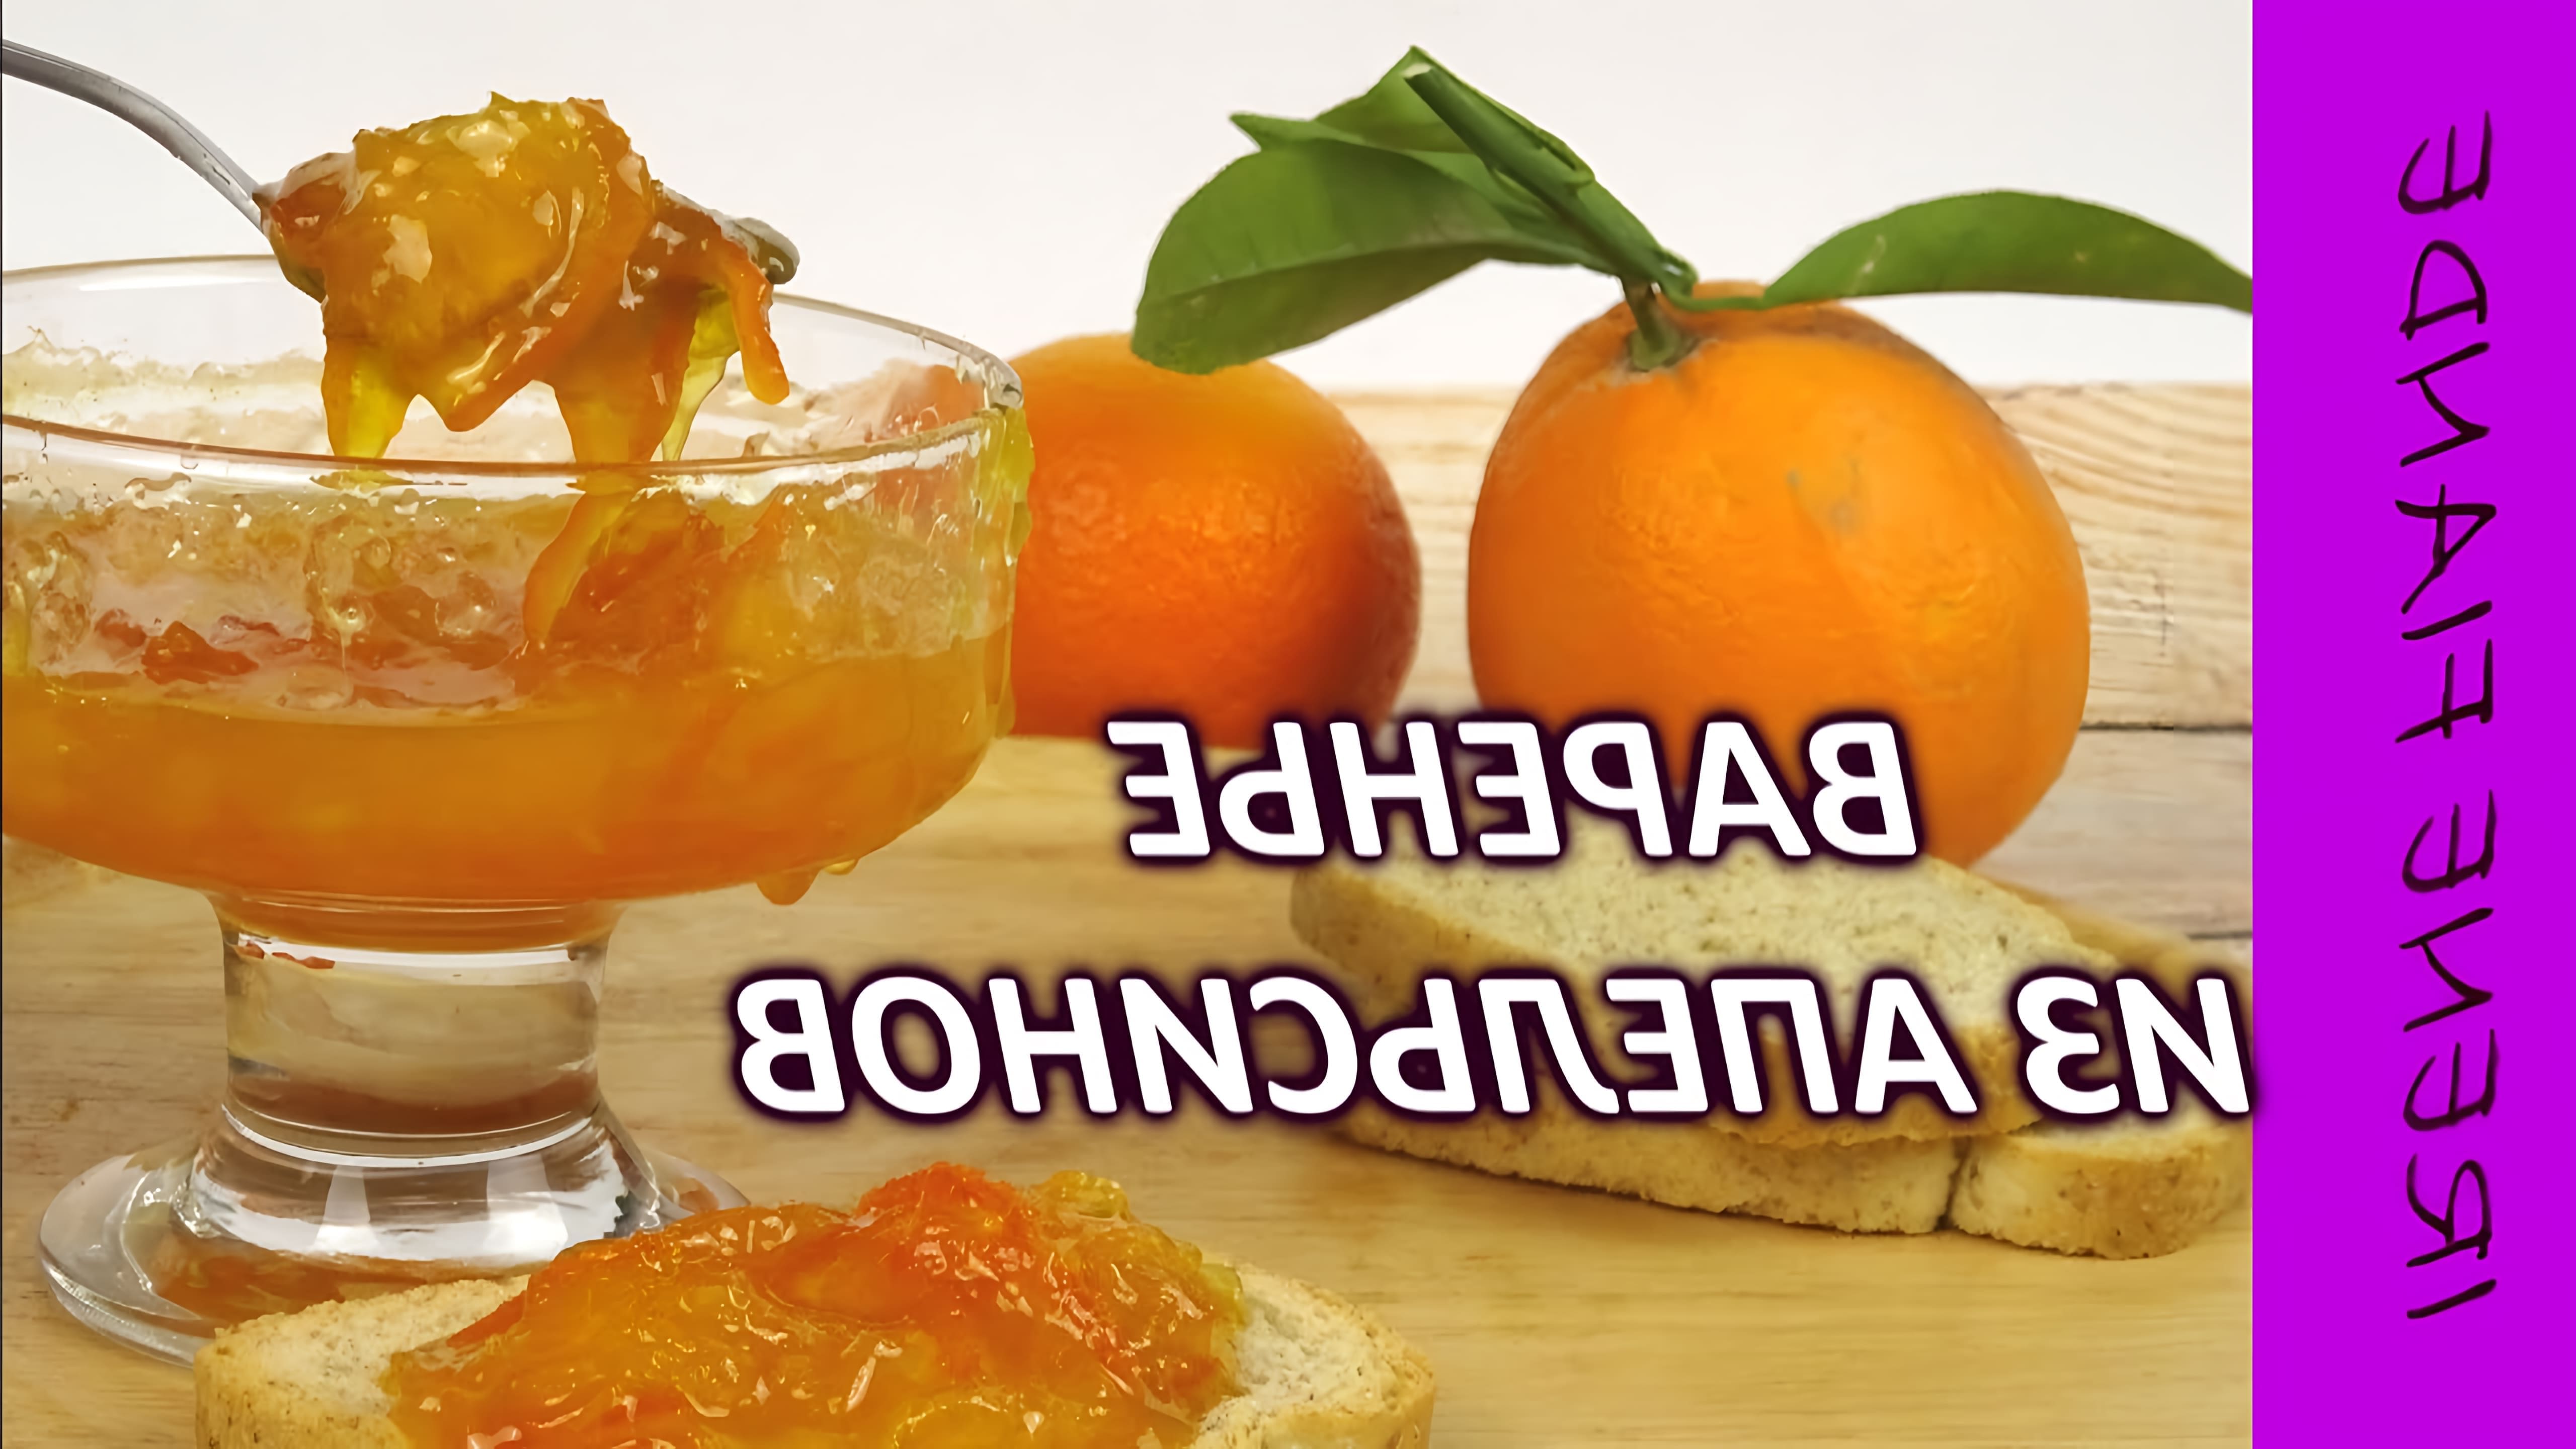 В этом видео демонстрируется рецепт приготовления густого апельсинового варенья с небольшими кусочками